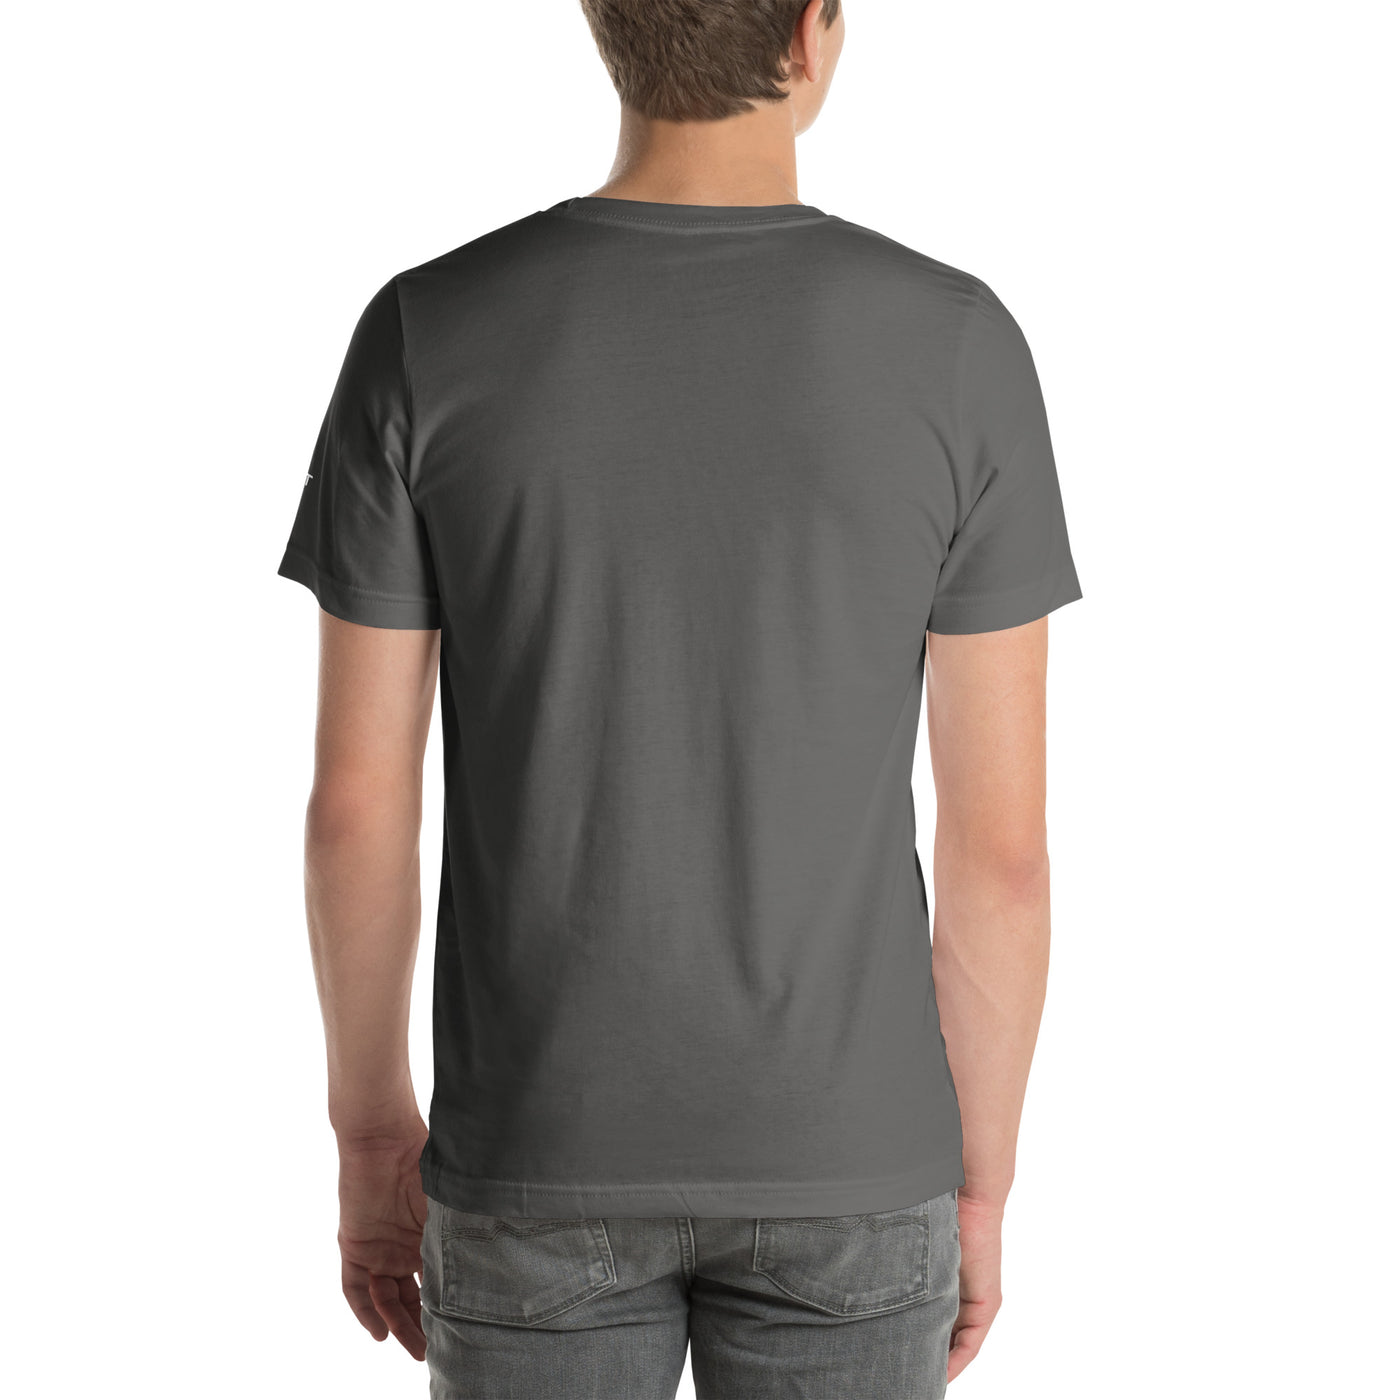 Forex Vector ( ) V1 - Unisex t-shirt